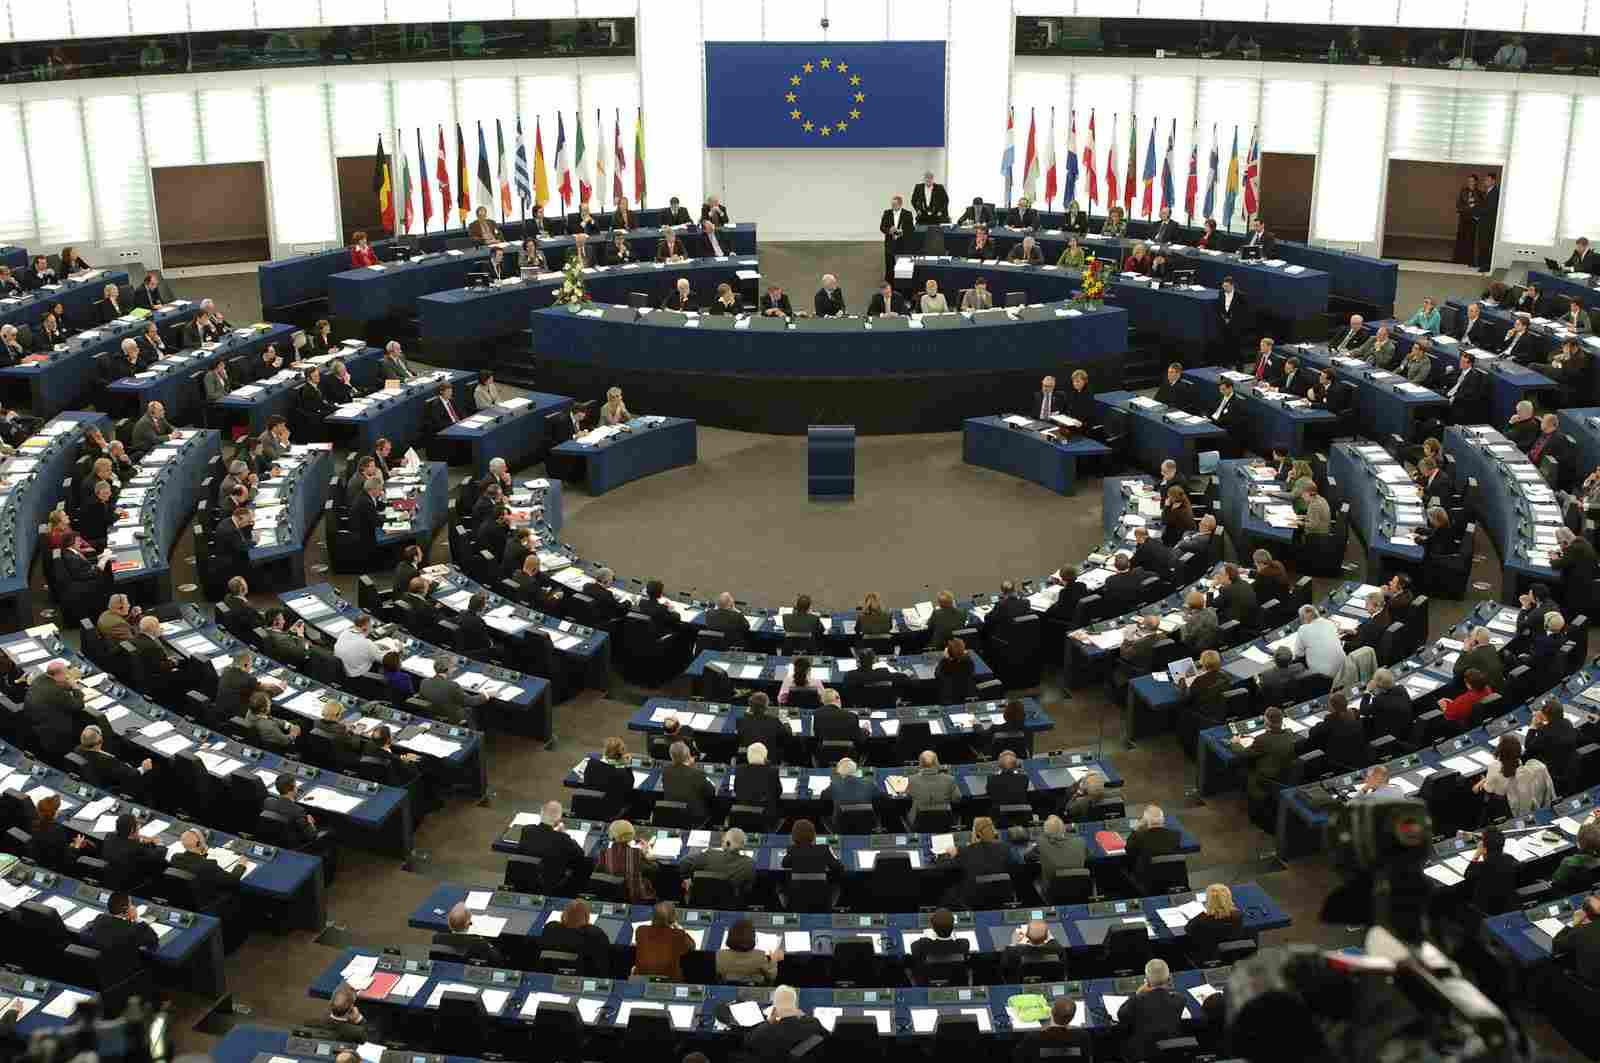 europai_parlament_belso.jpg